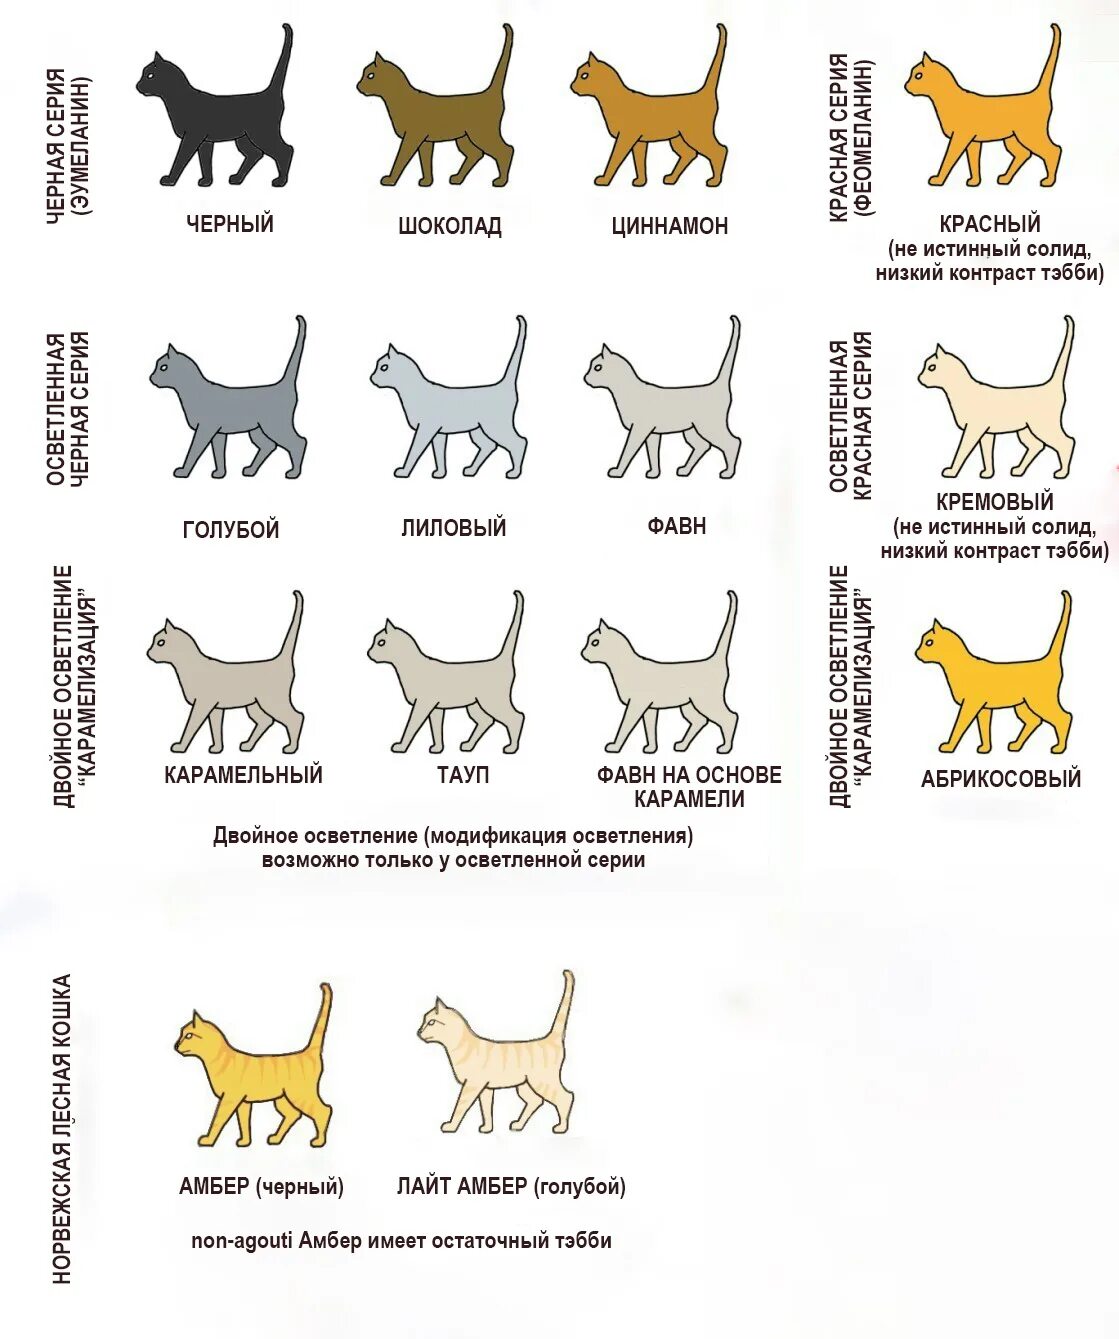 Окрасы британских кошек таблица обозначений. Окрасы тайских кошек таблица. Табби окрас кошек беспородных. Окрас табби кошки таблица. Типы окрасов кошек